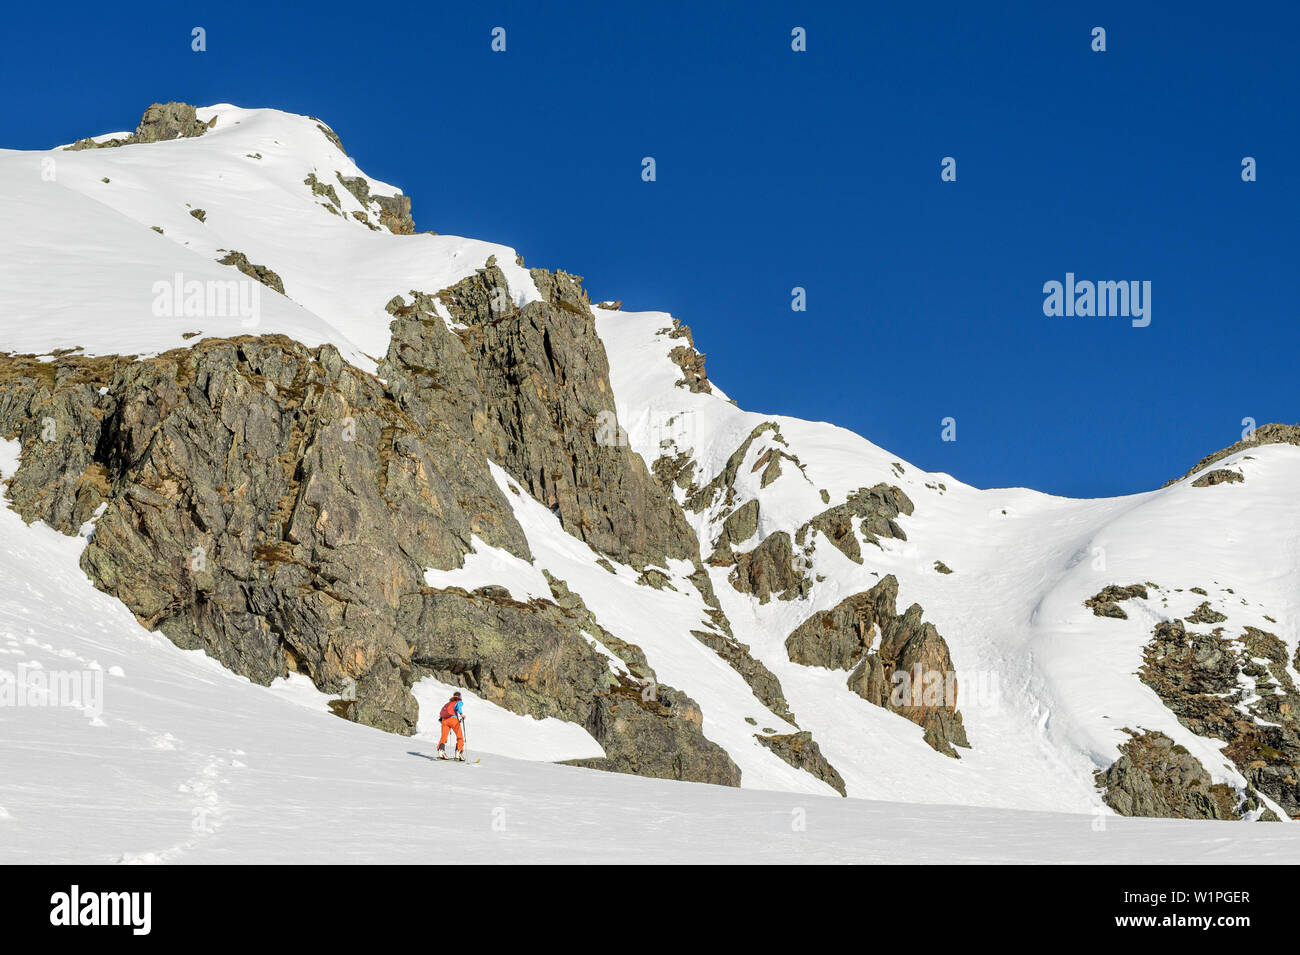 Woman backcountry-skiing ascending towards Steintalspitze, Steintalspitze, Sellrain, Stubai Alps, Tyrol, Austria Stock Photo